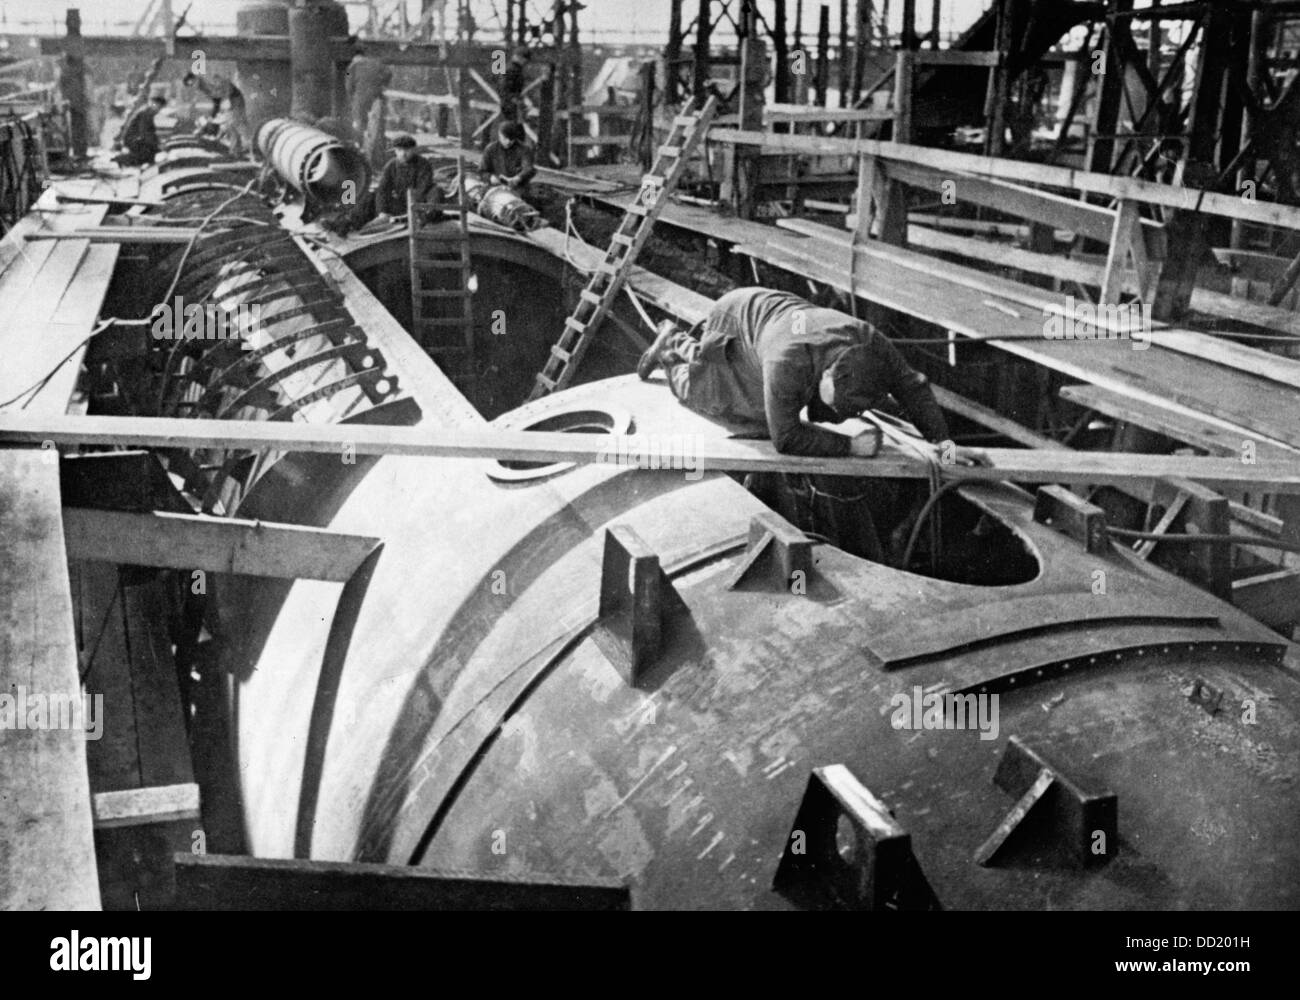 Das Bild der Nazi-Propaganda! Zeigt einen Schiffsmechaniker beim Bau eines U-Boots für die Marine im Oktober 1940. Ort unbekannt. Fotoarchiv für Zeitgeschichte Stockfoto